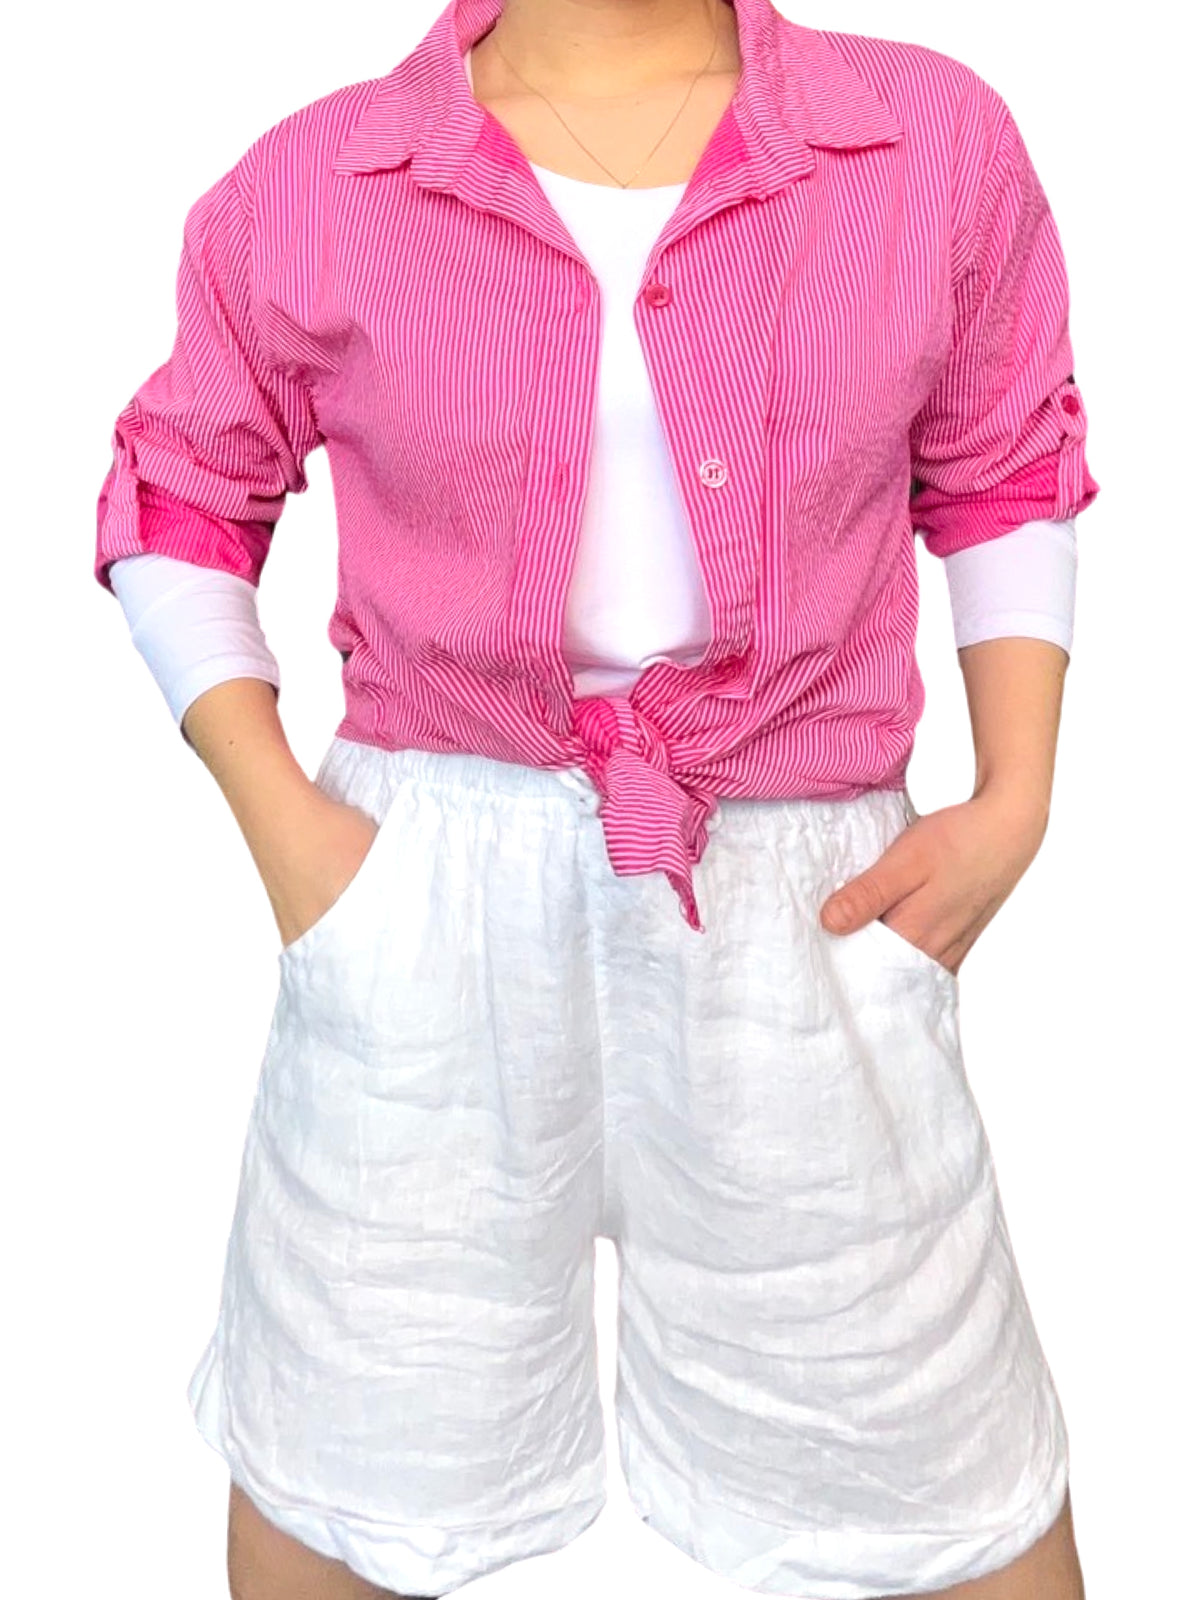 Chemise pour femme à manche longue fuchsia rayée avec nœud, chandail à manche longue et short en lin.